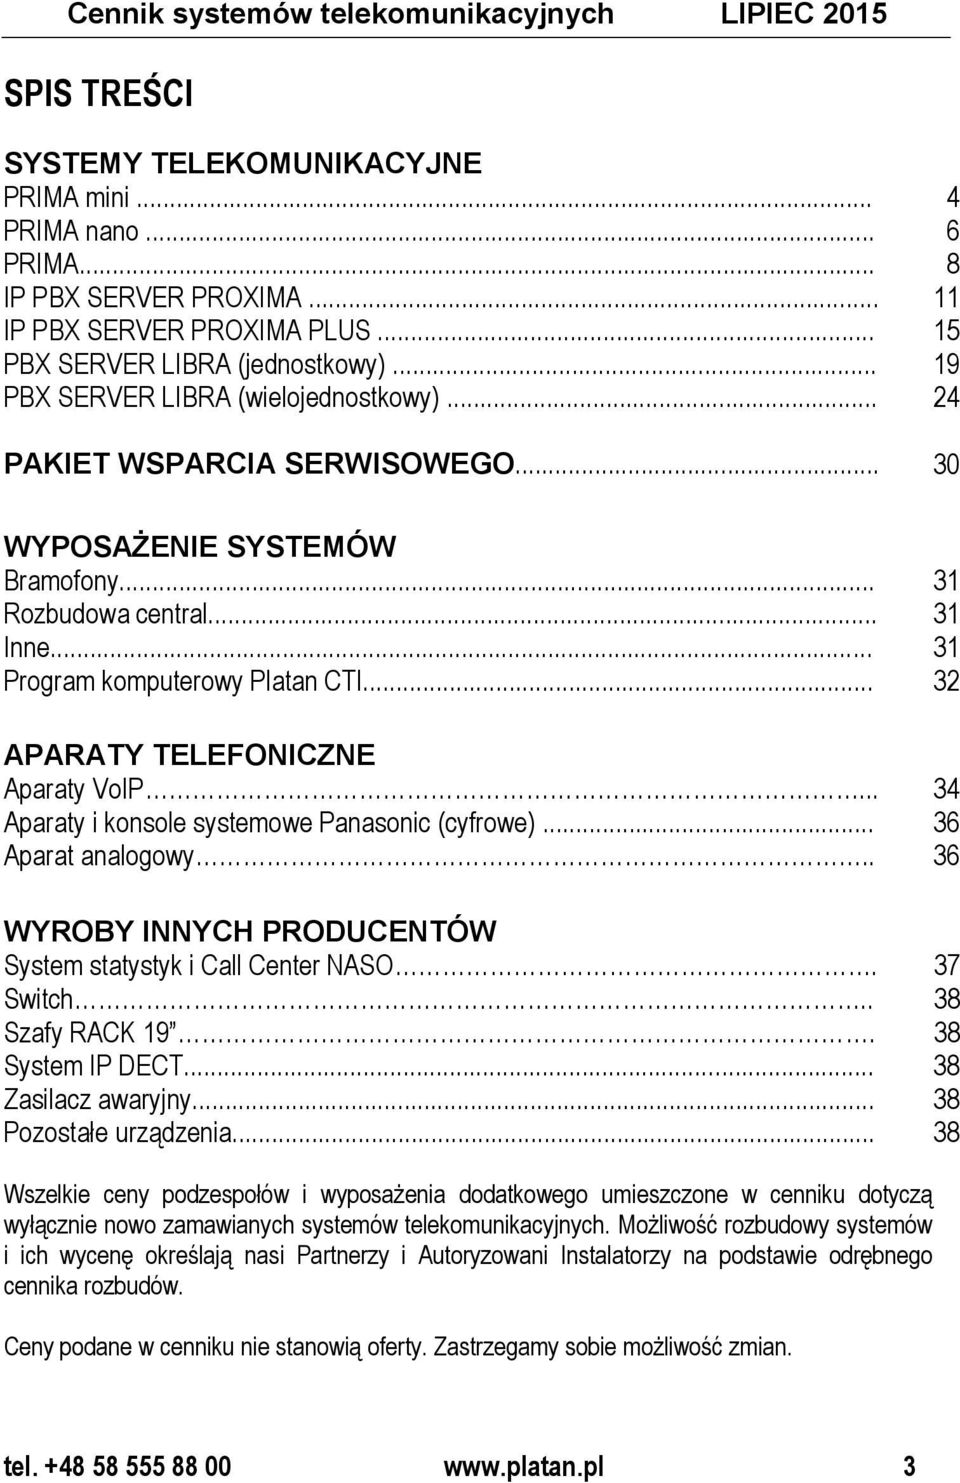 .. 31 Program komputerowy Platan CTI... 32 APARATY TELEFONICZNE Aparaty VoIP... 34 Aparaty i konsole systemowe Panasonic (cyfrowe)... 36 Aparat analogowy.